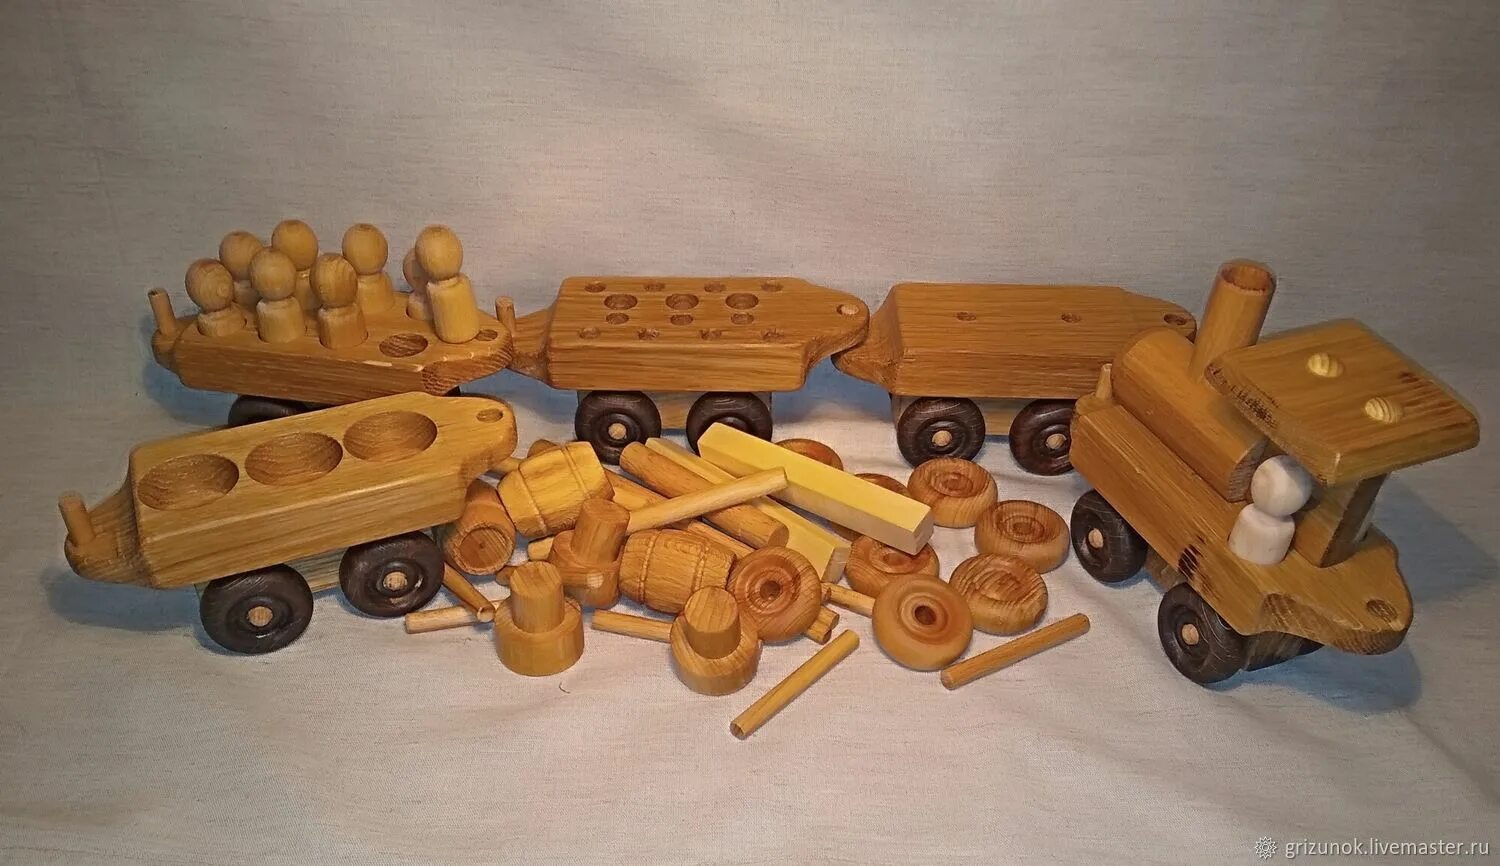 Rolling toy. Деревянные машинки большие. Деревянные игрушки техника. Игрушечные большие машины деревянные. Каталка мастерская деревянная.